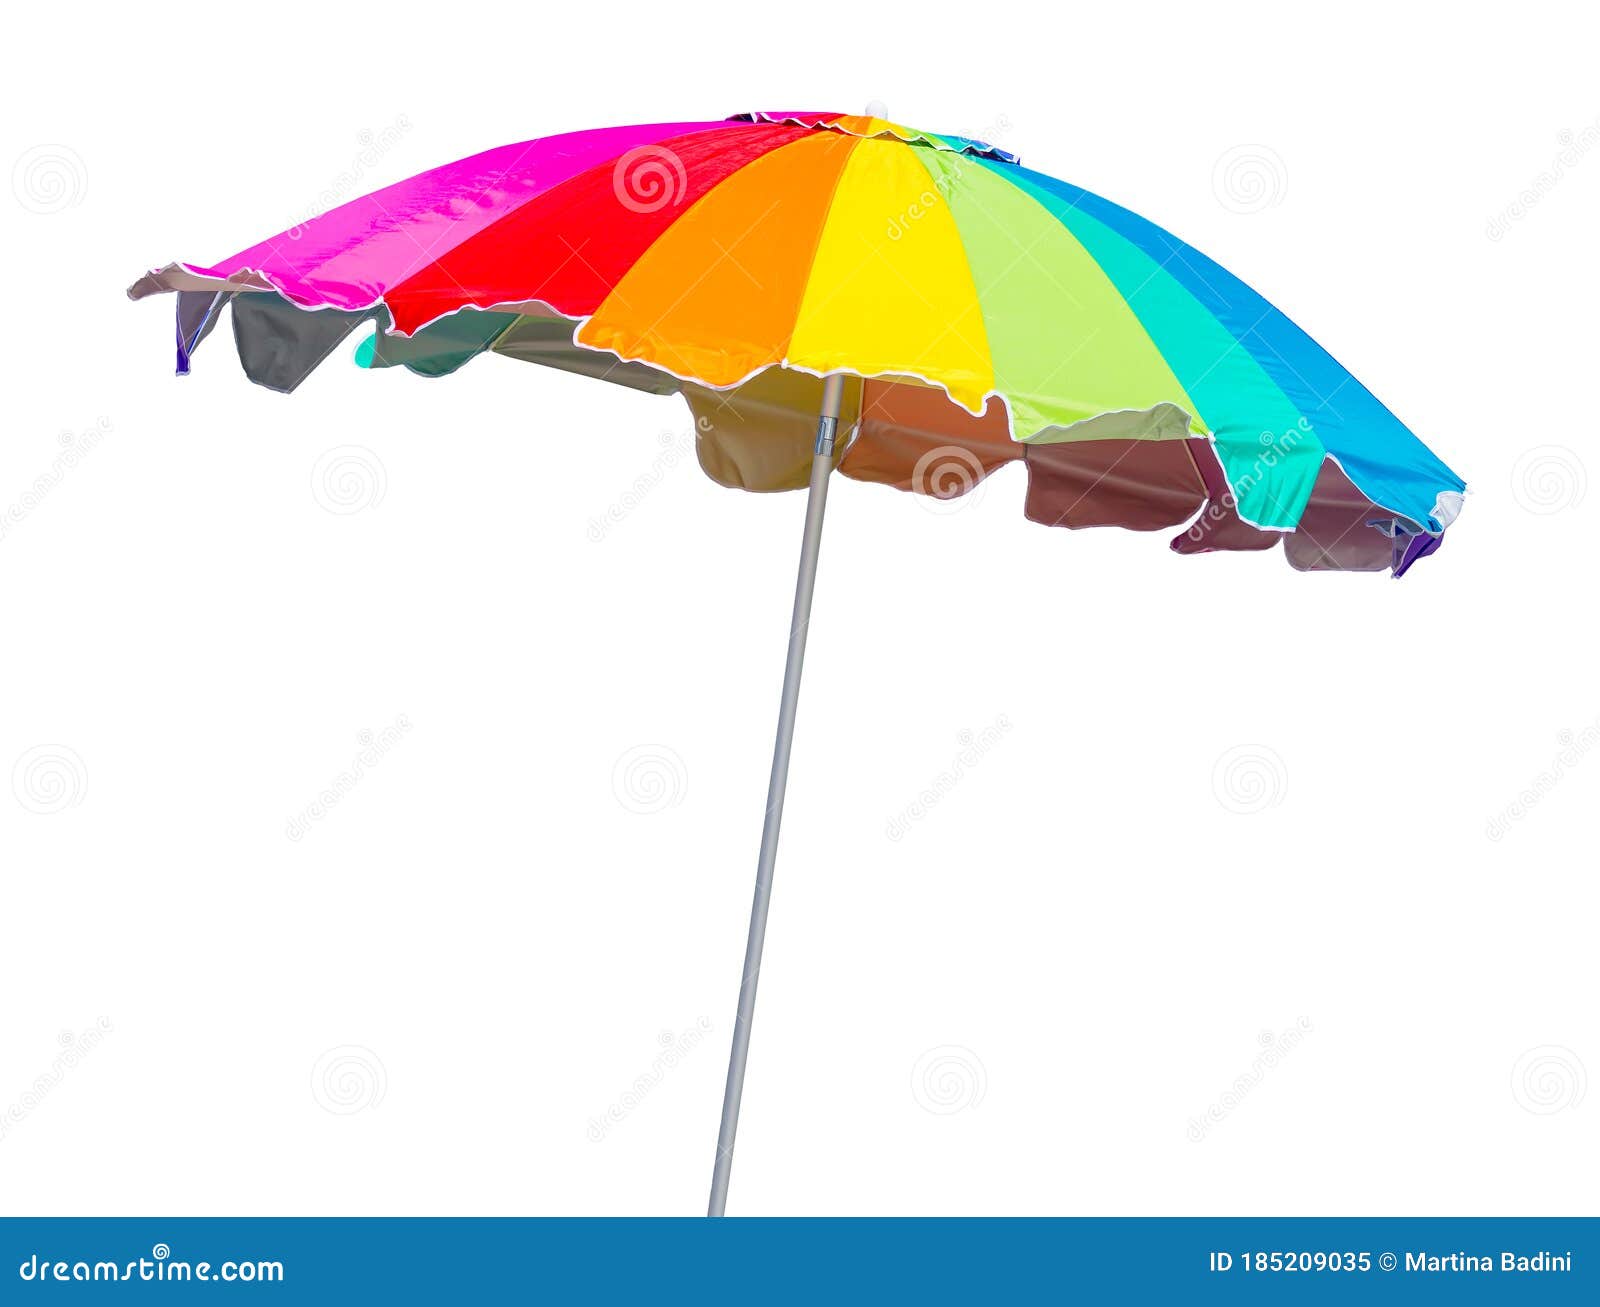 定制户外广告伞摆摊伞大型雨伞太阳伞地摊沙滩伞防晒遮阳伞批发-阿里巴巴